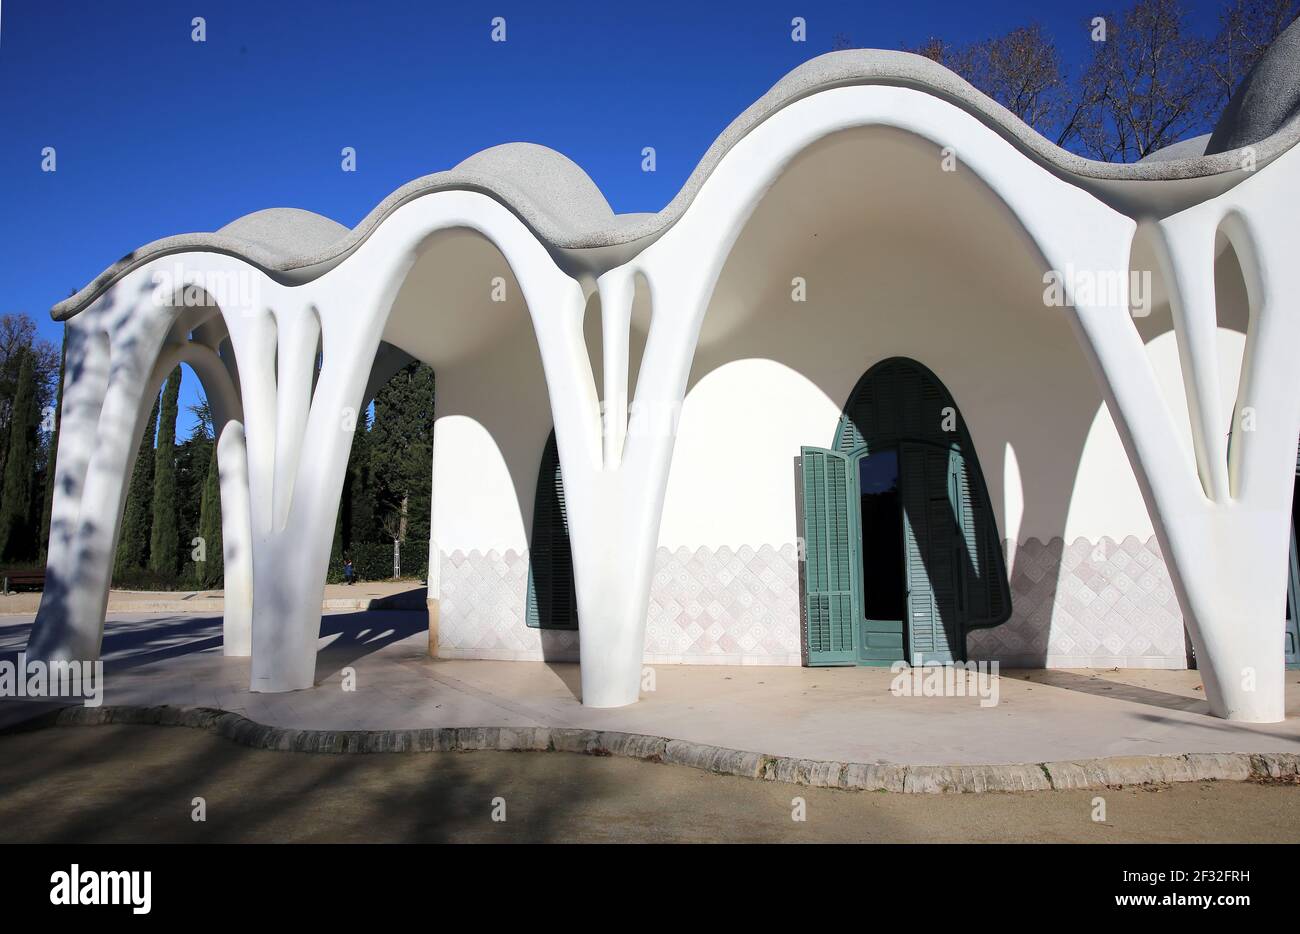 Masia Freixa ( 1907 ). Bâtiment moderniste inspiré par Gaudí. Lluis Moncunill architecte. Parc de Sant Jordi, Terrassa, Catalogne. Espagne. Banque D'Images